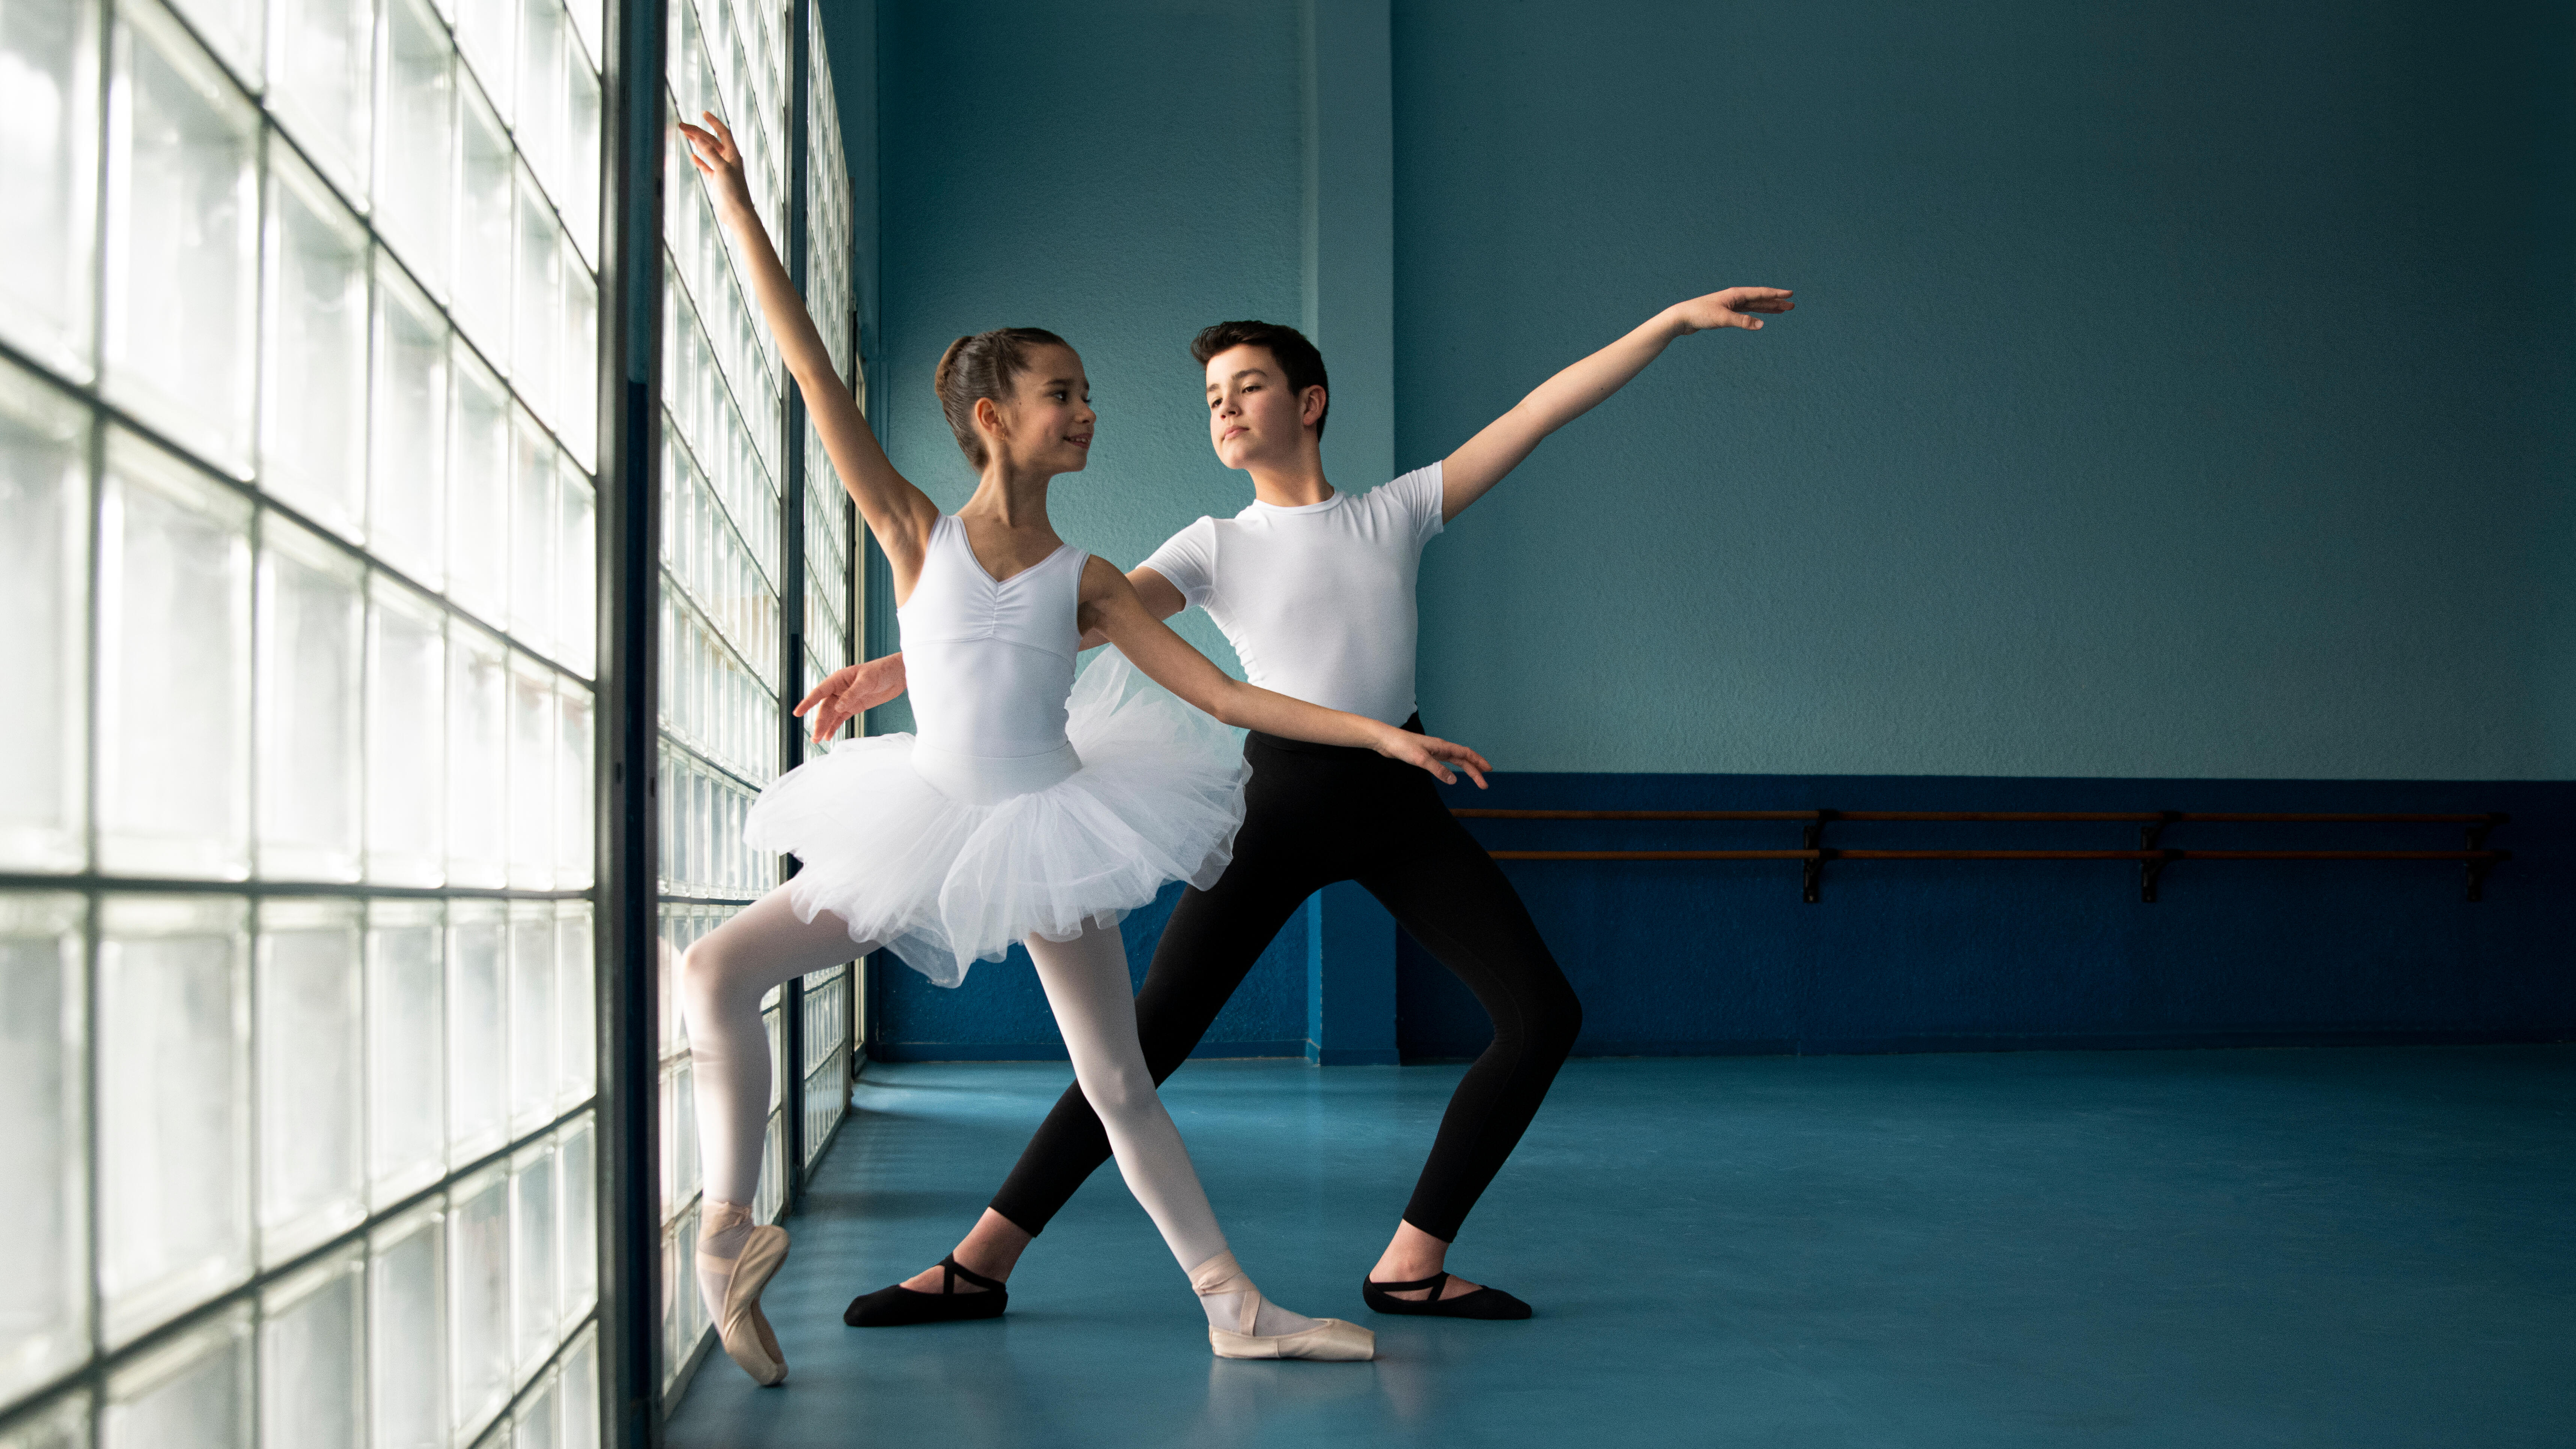 Girls' Ballet Camisole Leotard - Black - Decathlon